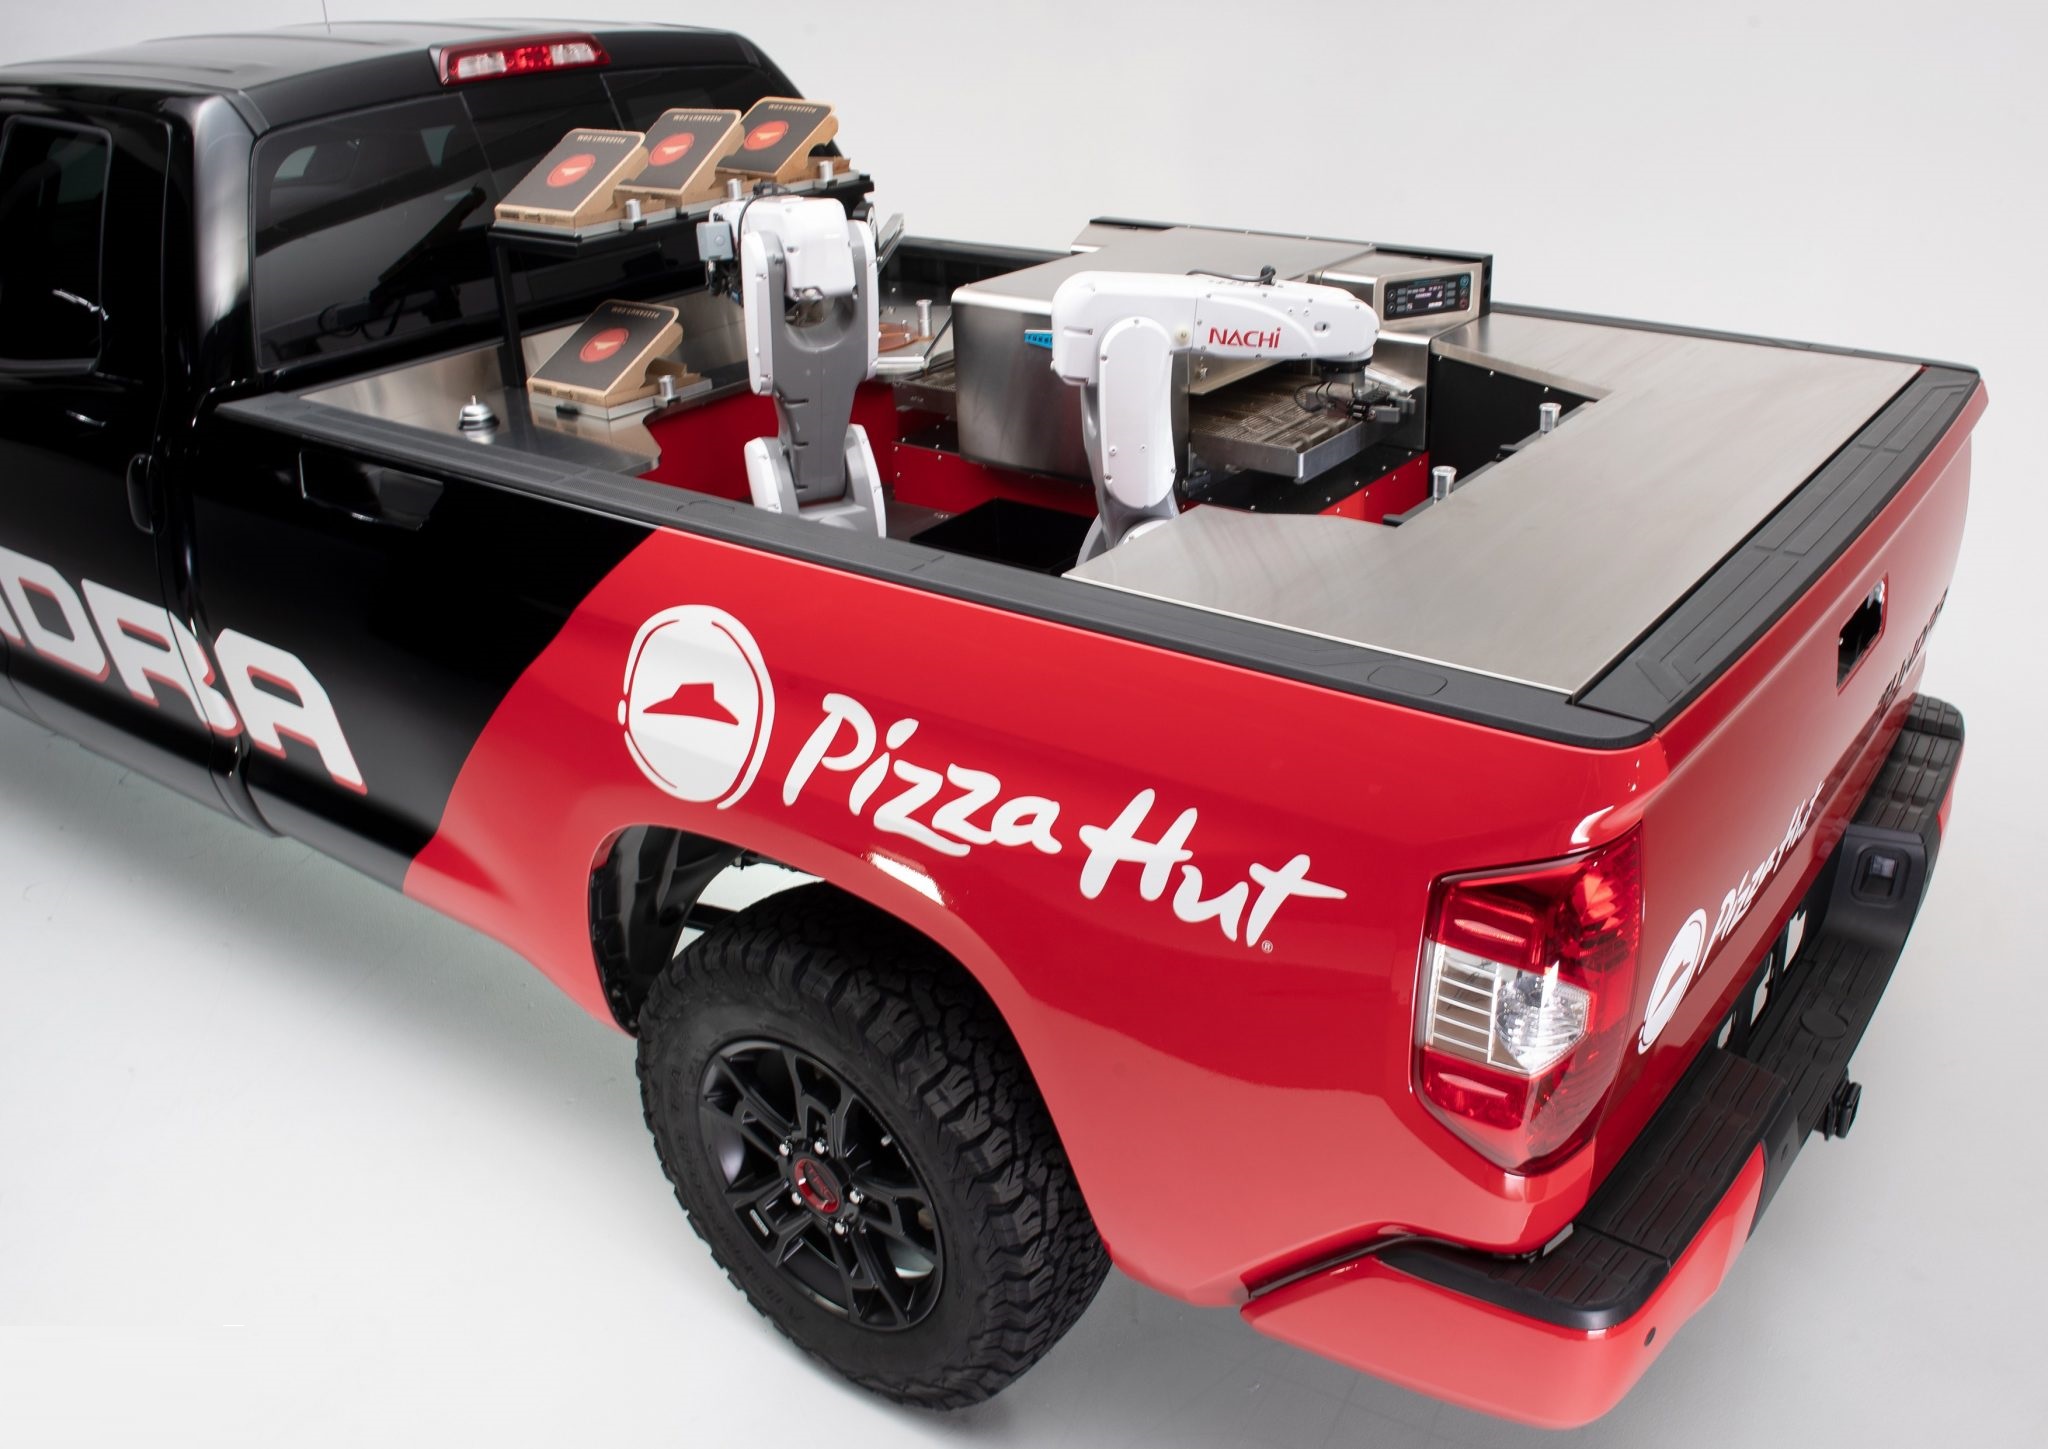 تويوتا تطلق تندرا بيك أب نسخة “بيتزا هت”!